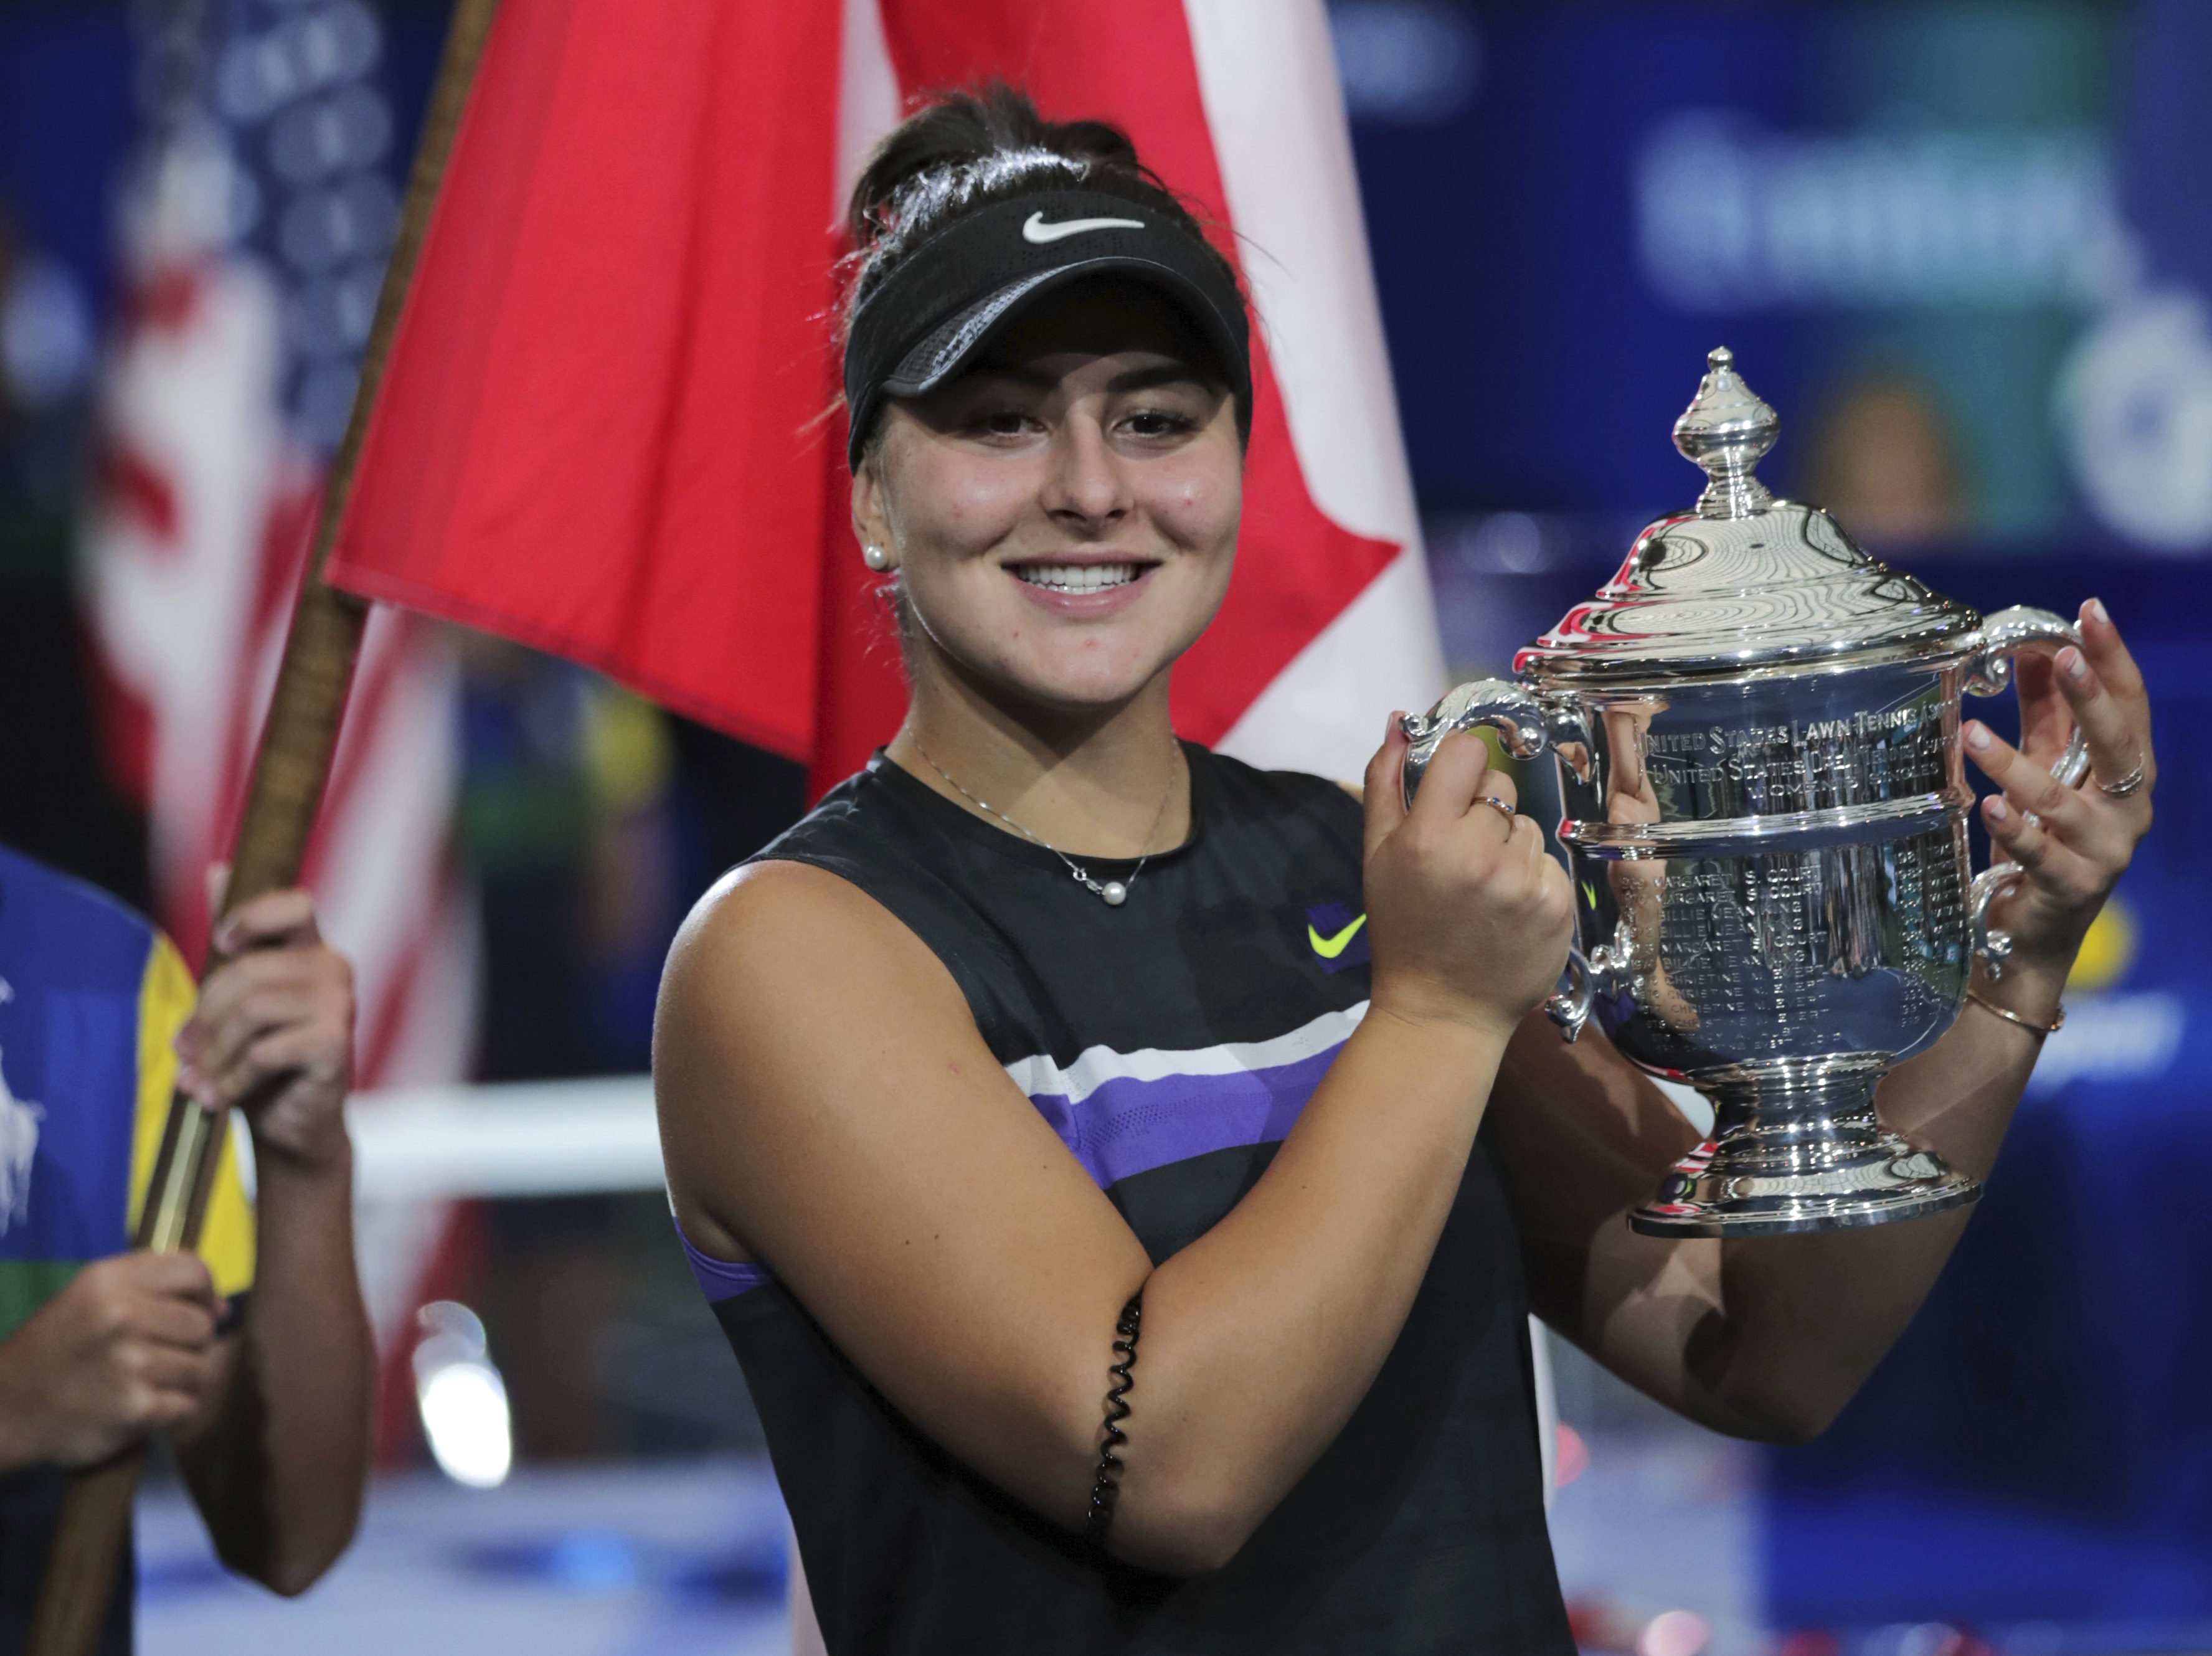 Kanaďanka Bianca Andreescu na snímke aj s trofejou pre víťaza po tom, ako vo finále US Open zdolala Serenu Williamsovú.